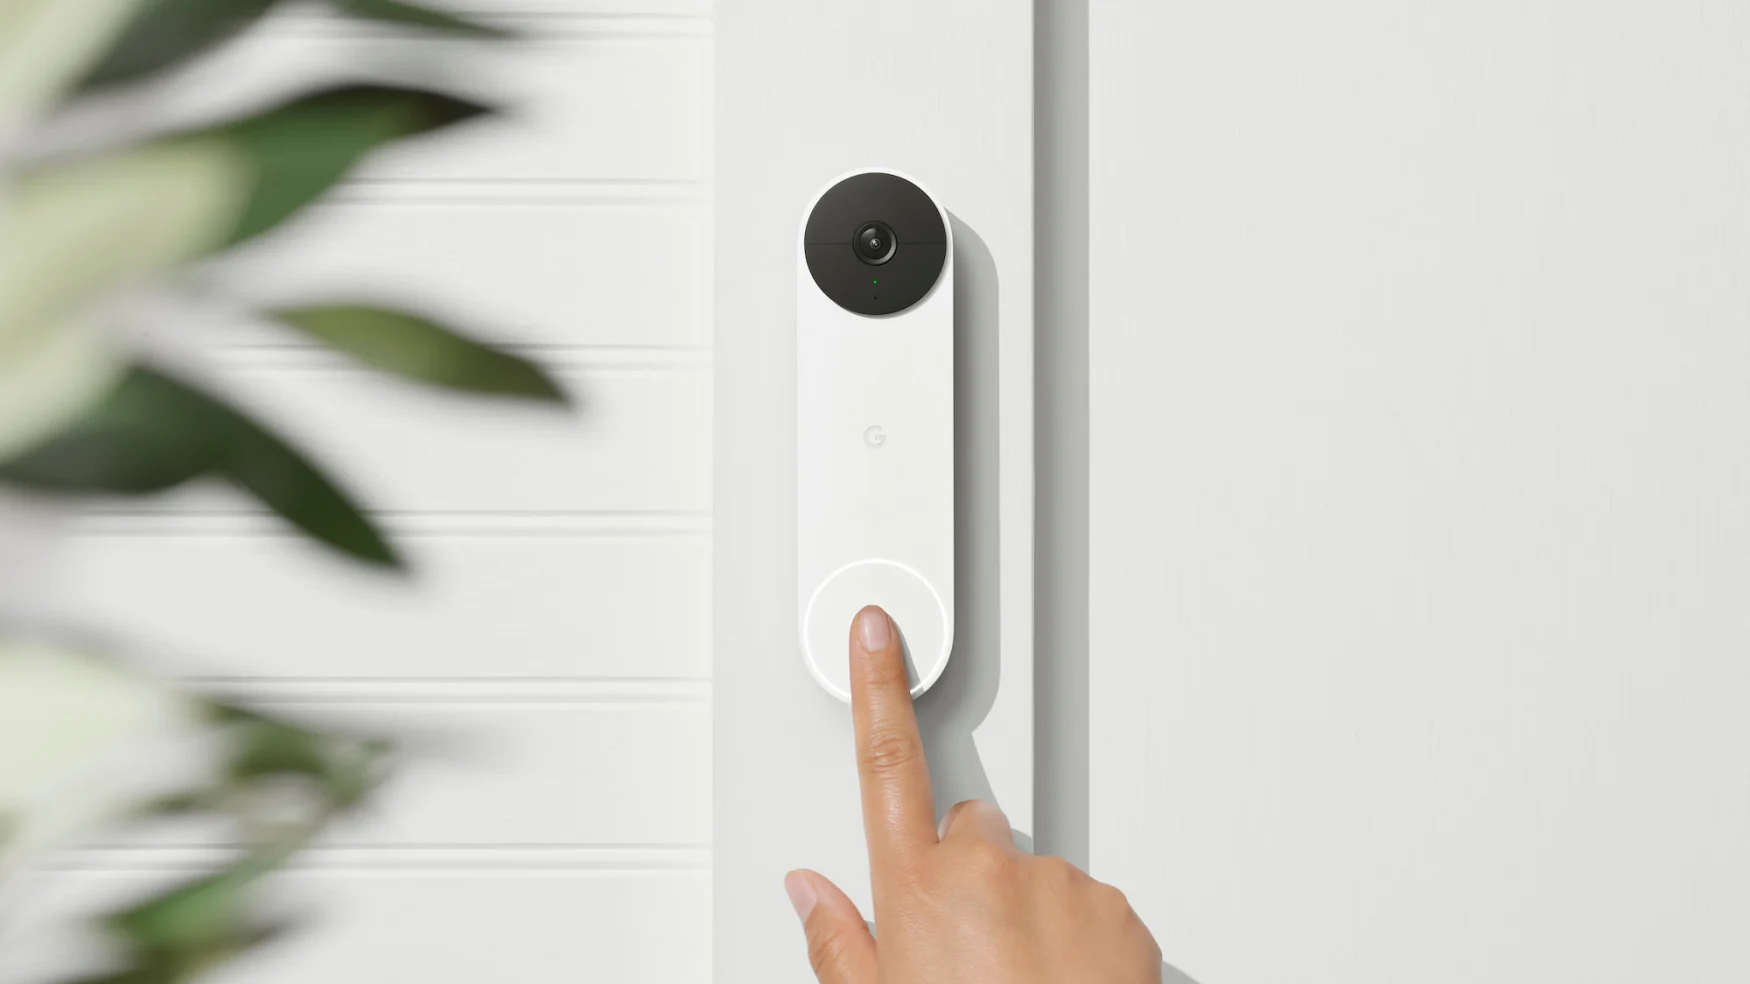 Battery-powered Google Nest Doorbell